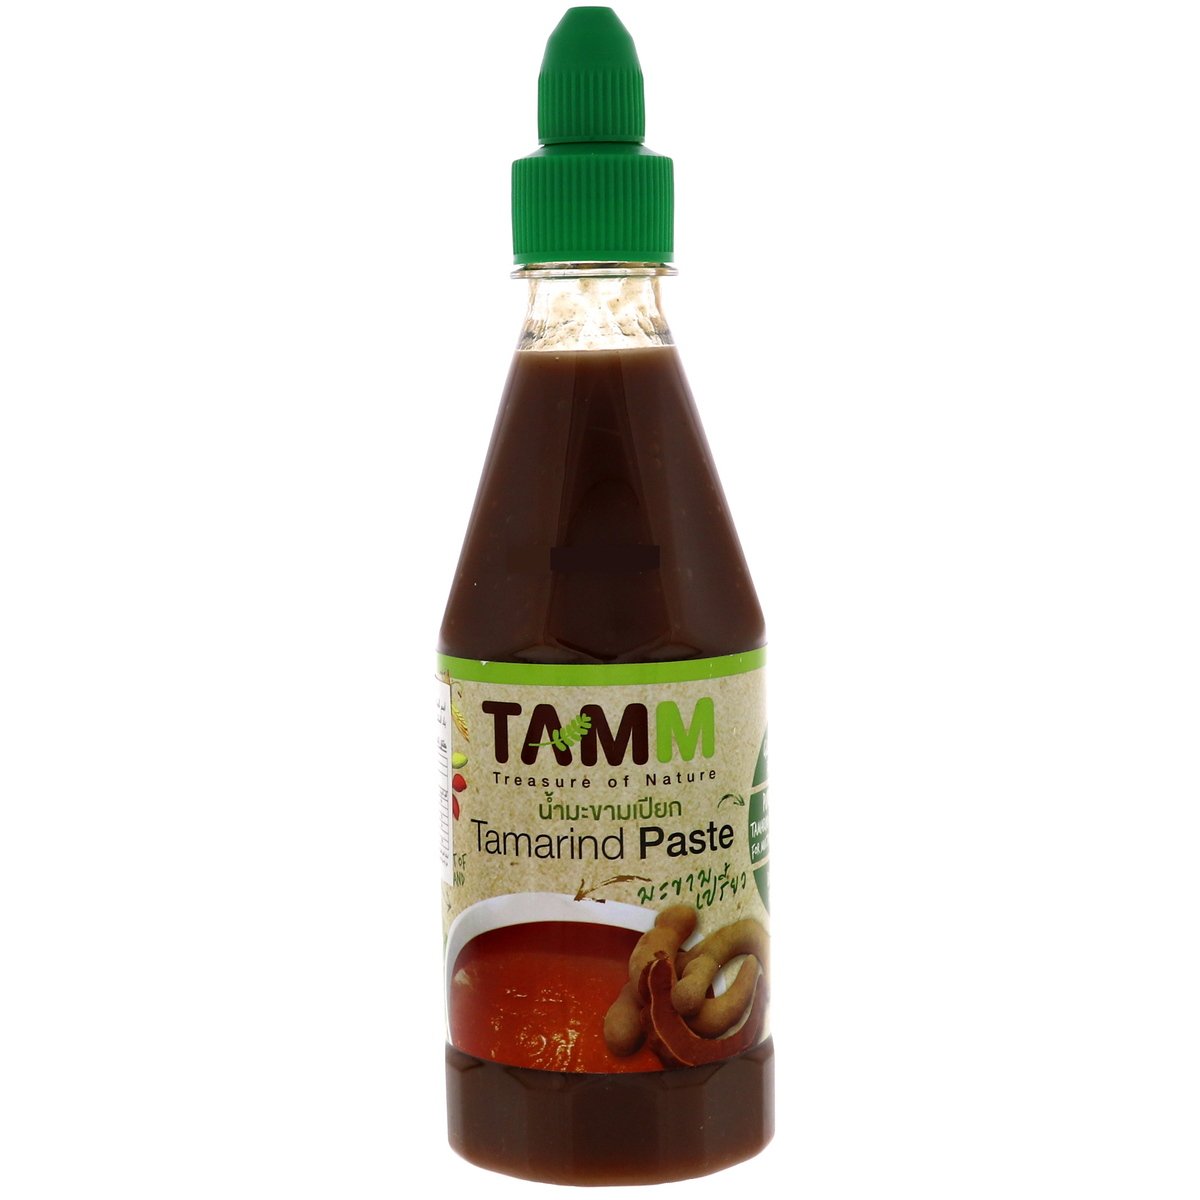 Tamm Tamarind Paste 485 g